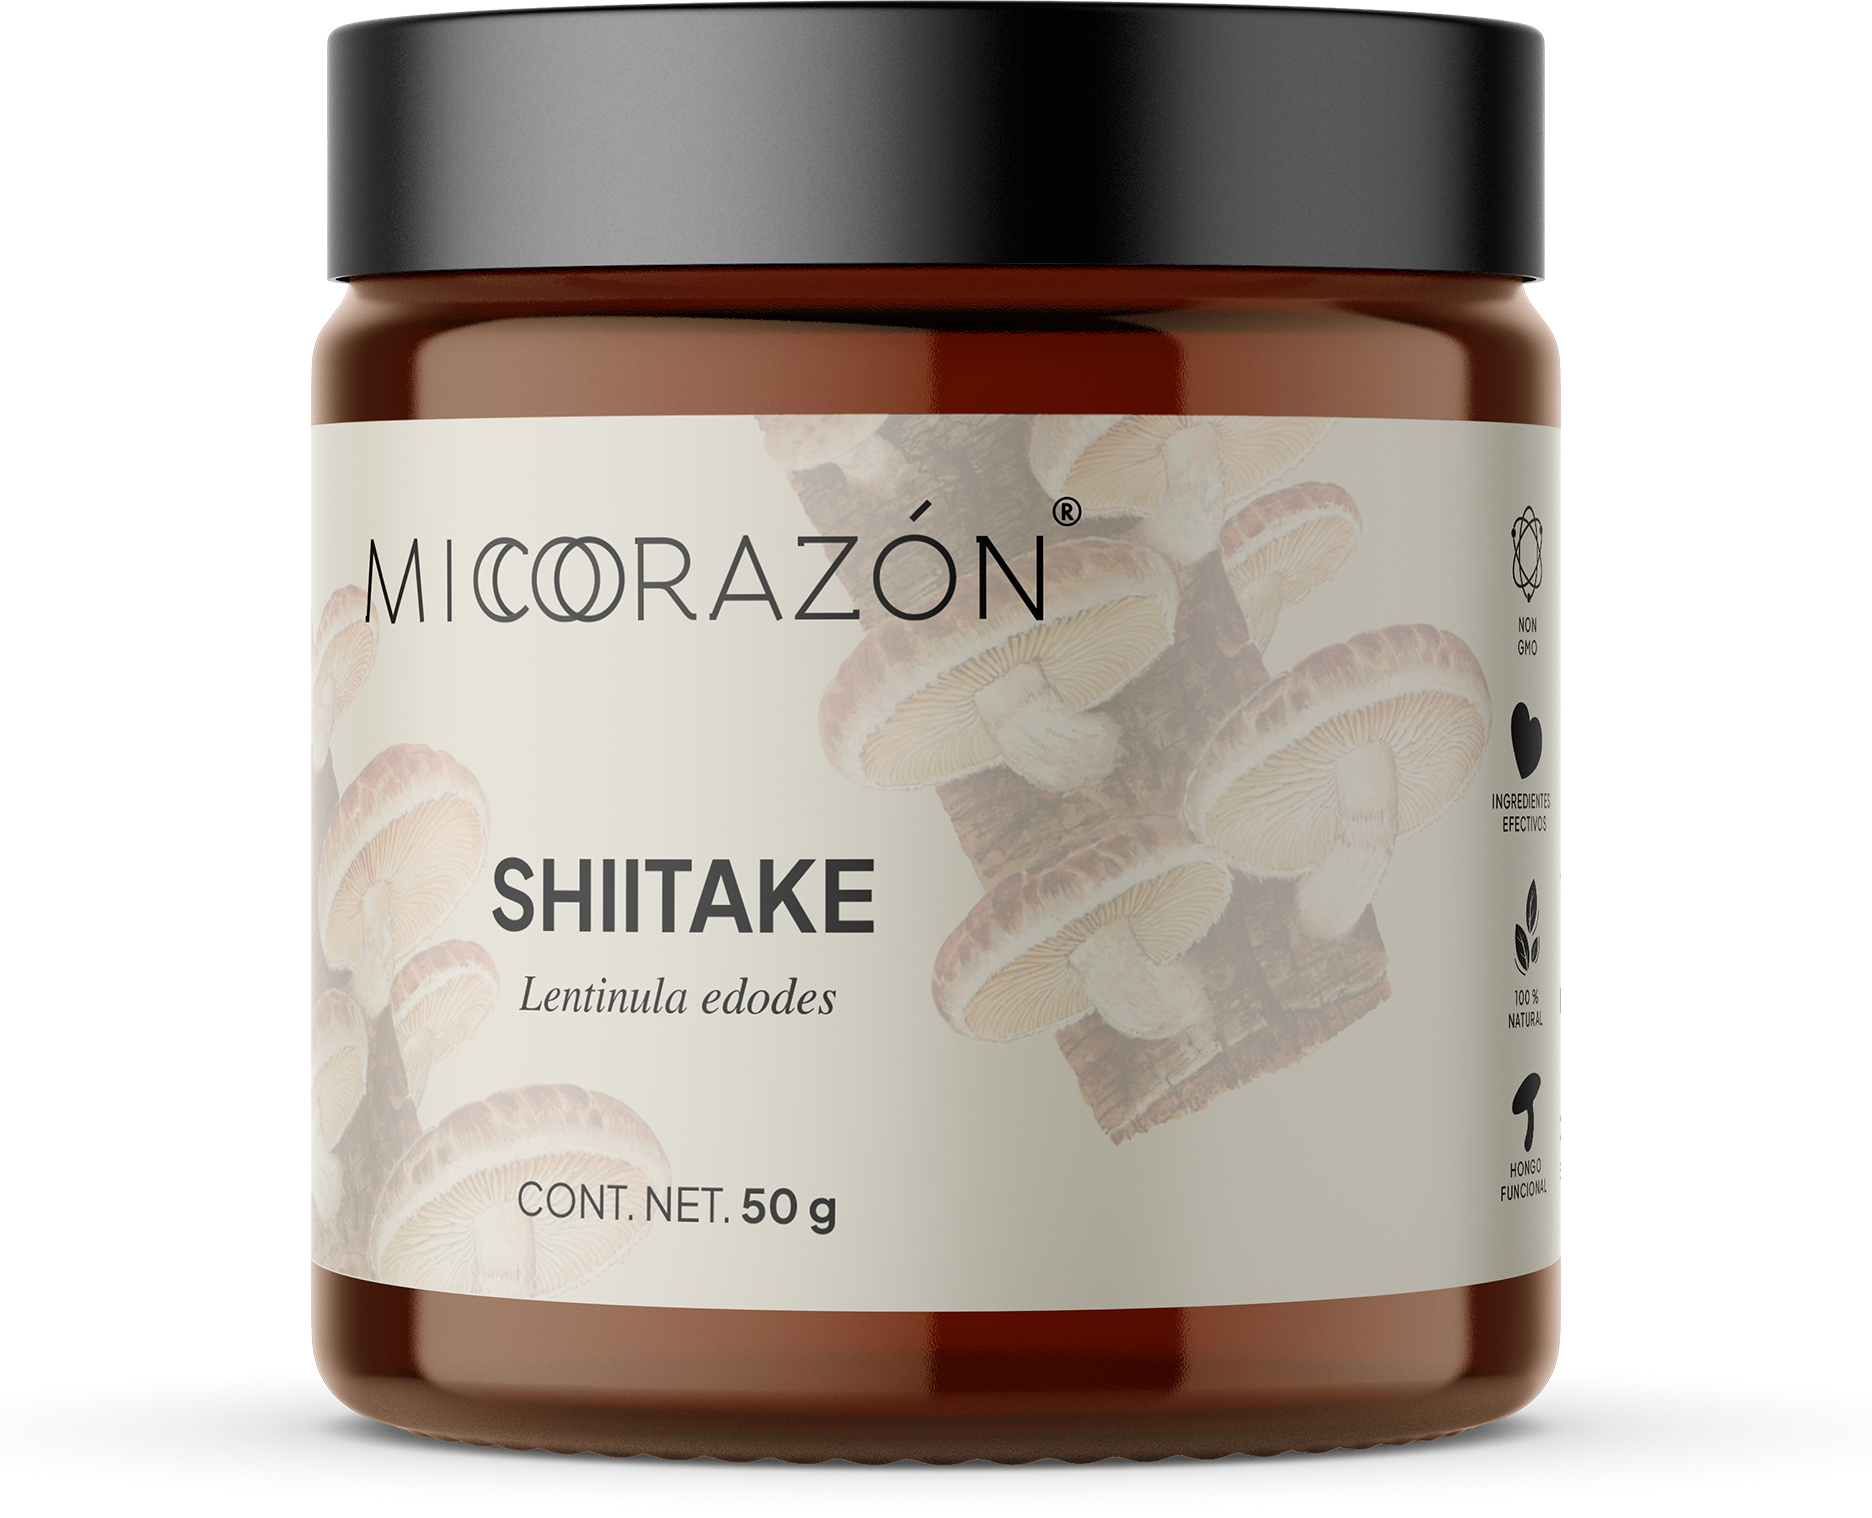 Shiitake | Antioxidante